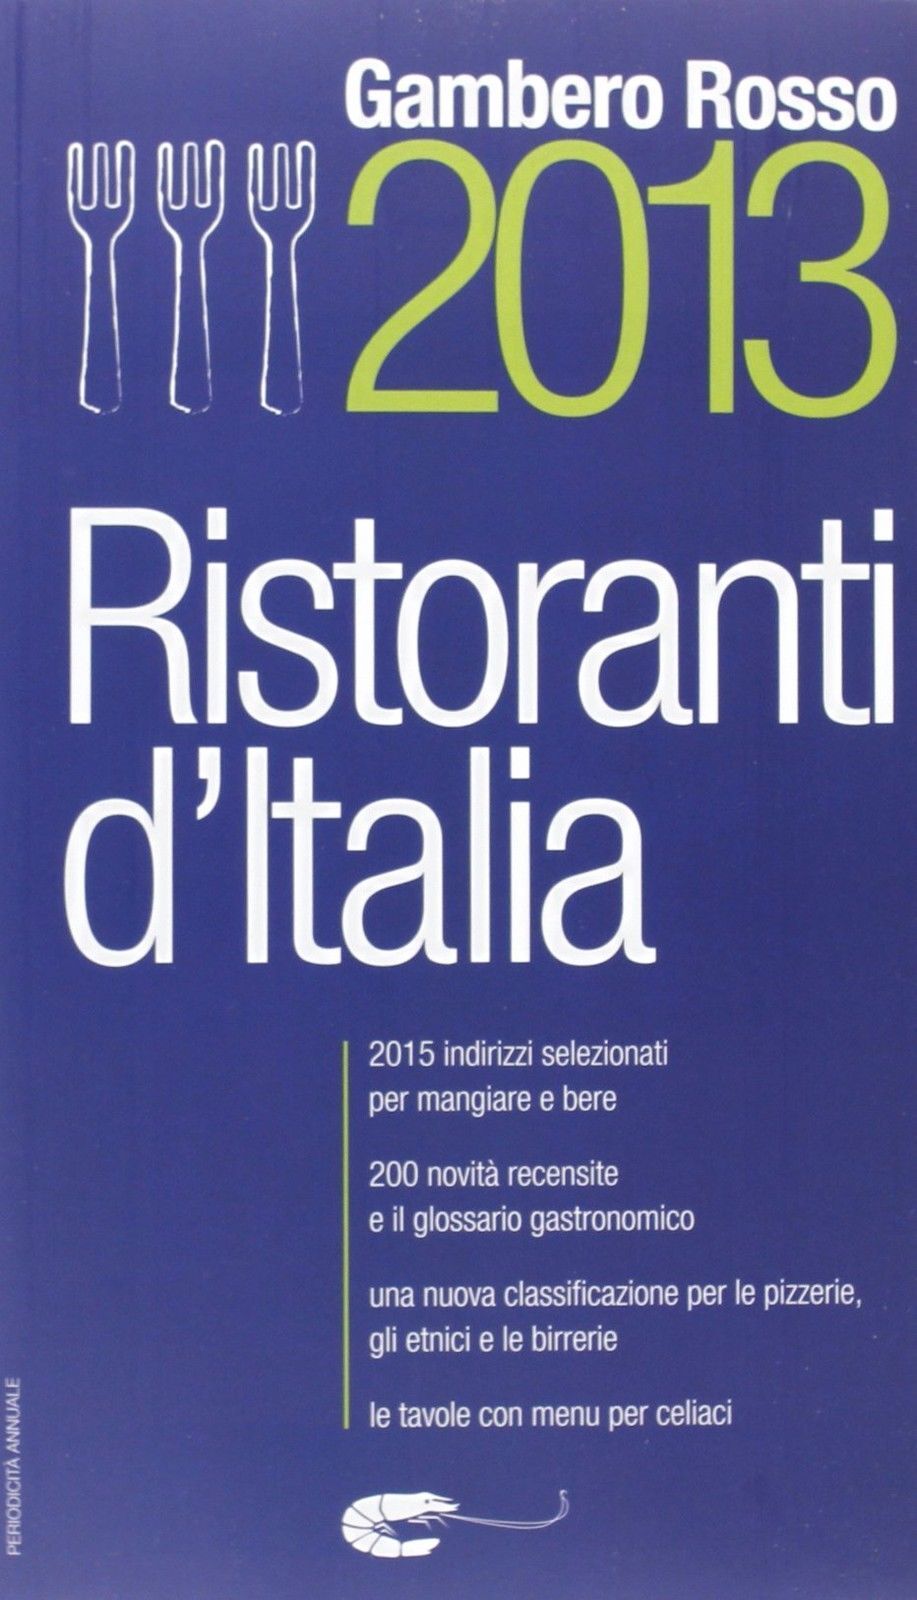 Ristoranti d'Italia del Gambero Rosso 2013 - Aa.vv.,  2013,  Gambero Rosso 